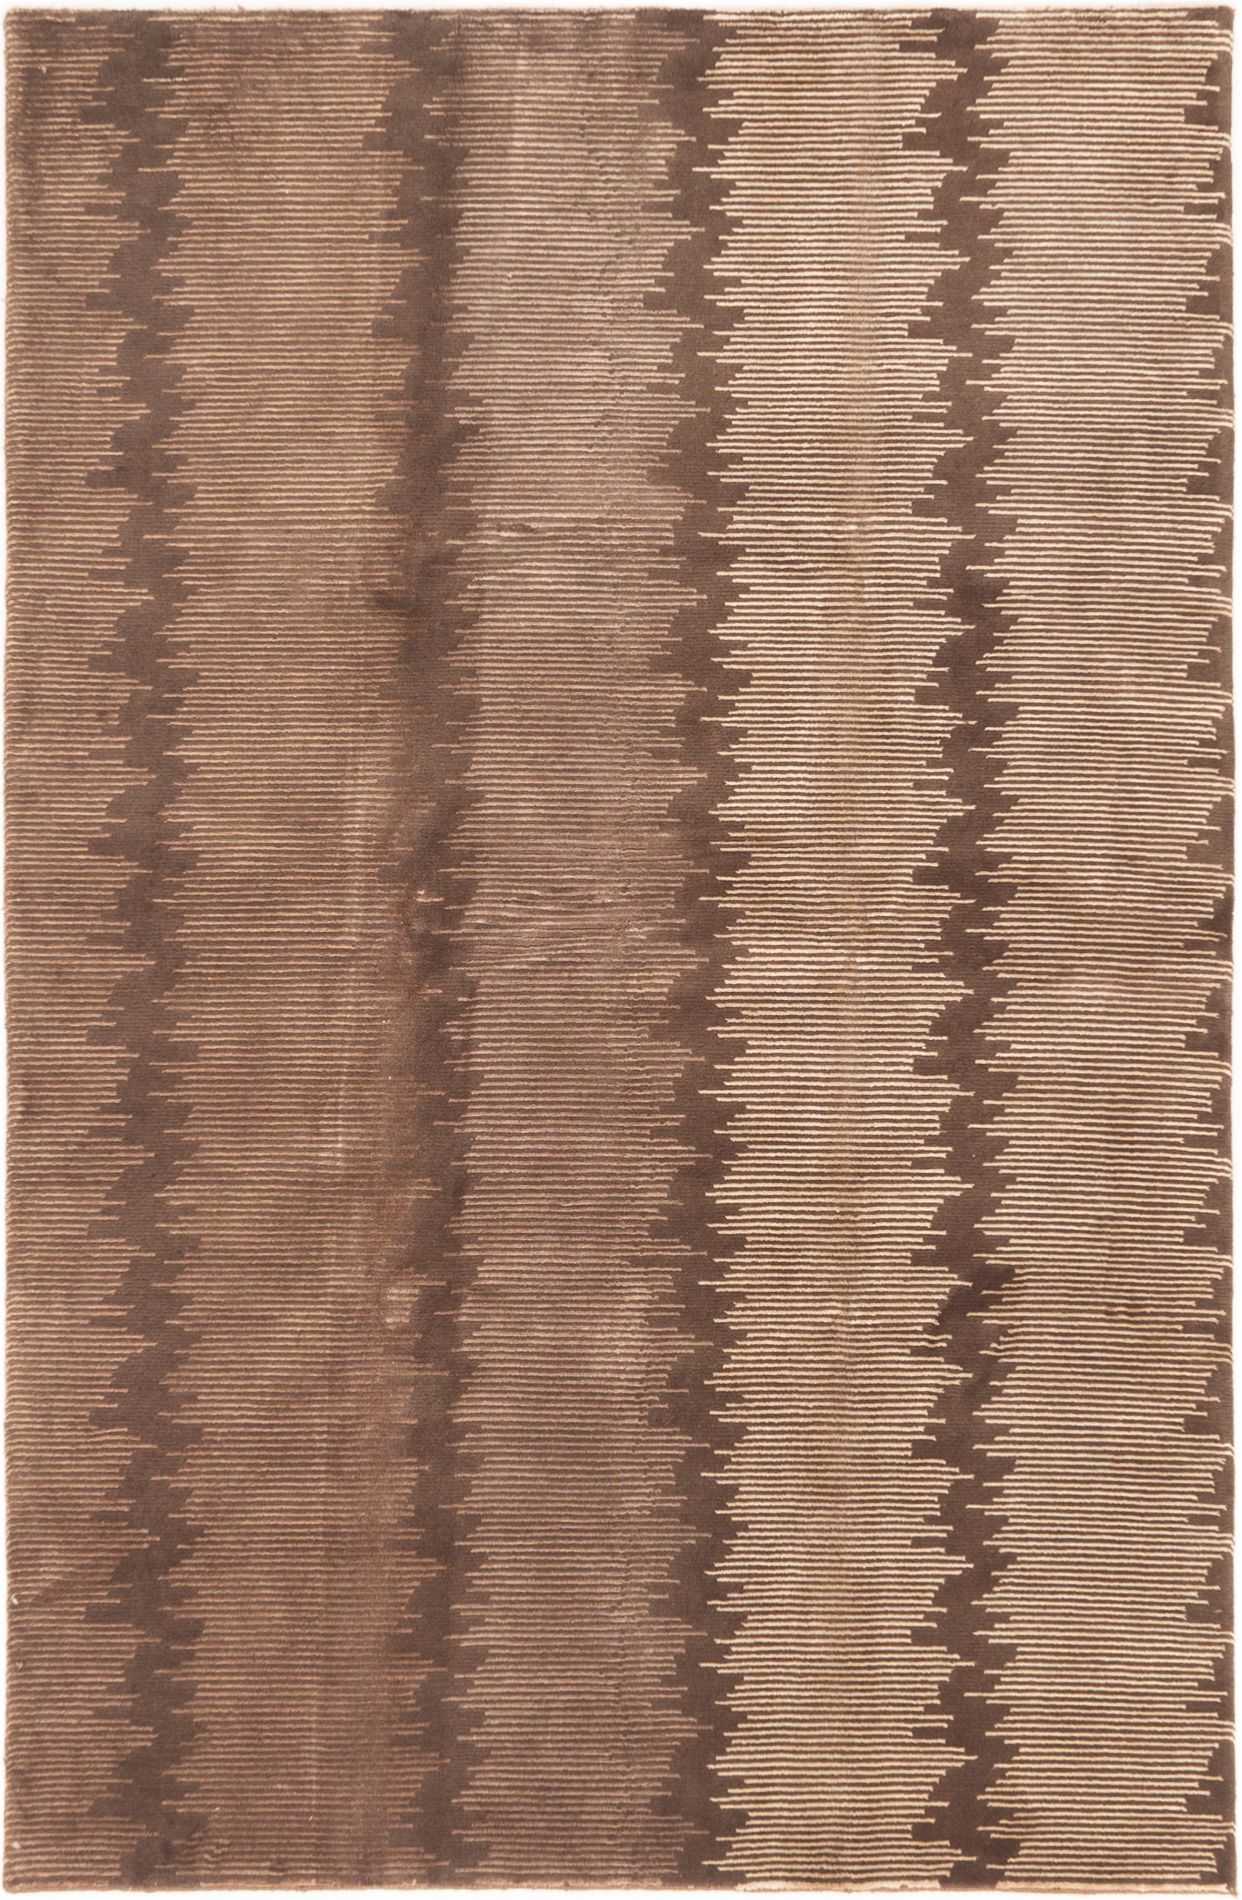 Hand-knotted Silk Touch Dark Brown Wool/Silk Rug 5'4" x 8'2" Size: 5'4" x 8'2"  